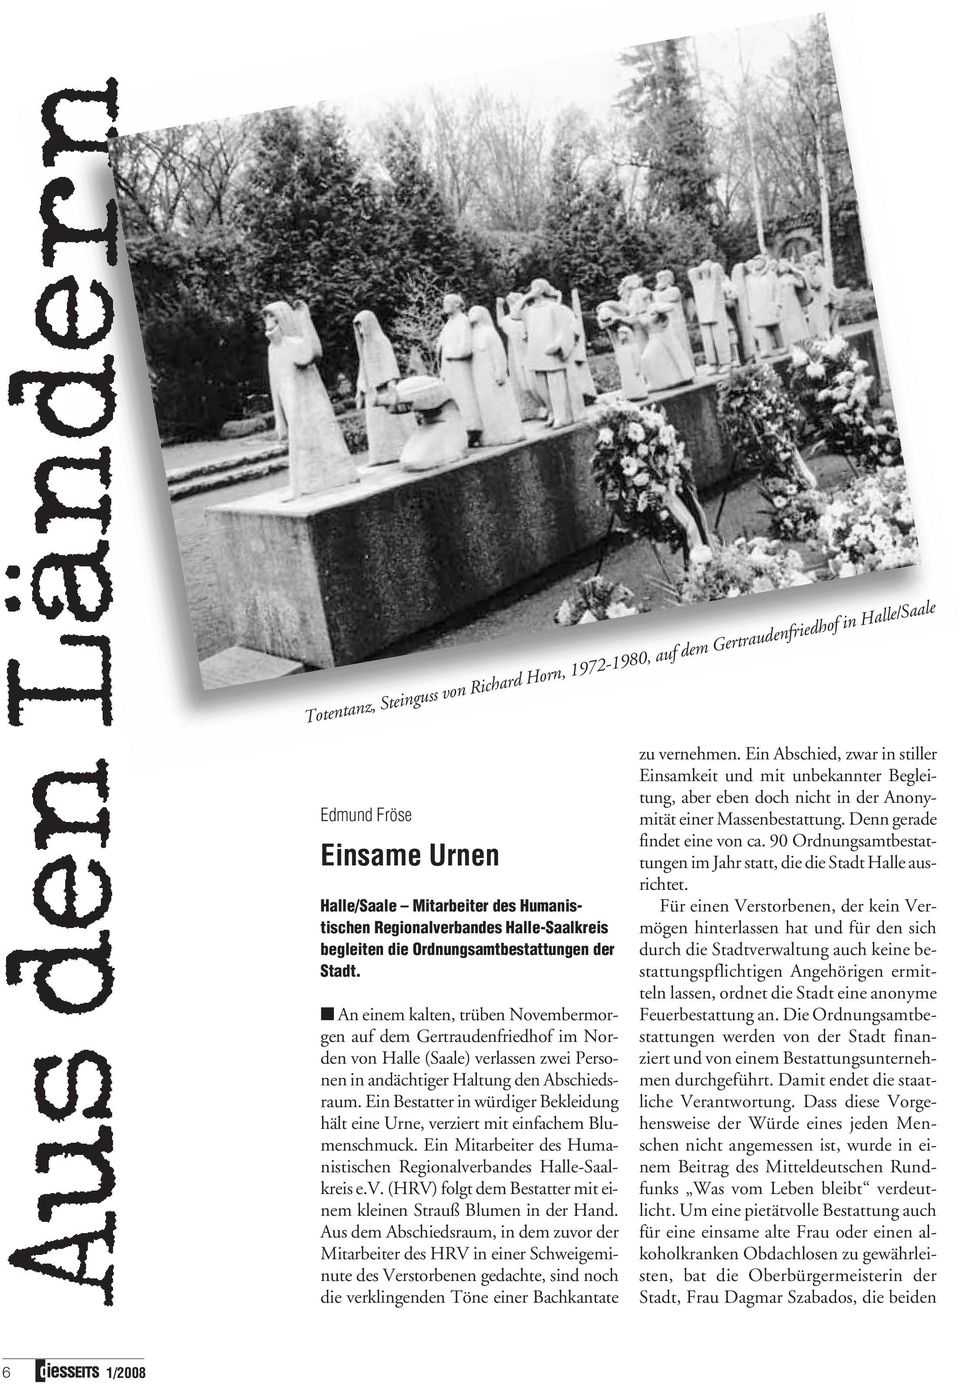 An einem kalten, trüben Novembermorgen auf dem Gertraudenfriedhof im Norden von Halle (Saale) verlassen zwei Personen in andächtiger Haltung den Abschiedsraum.